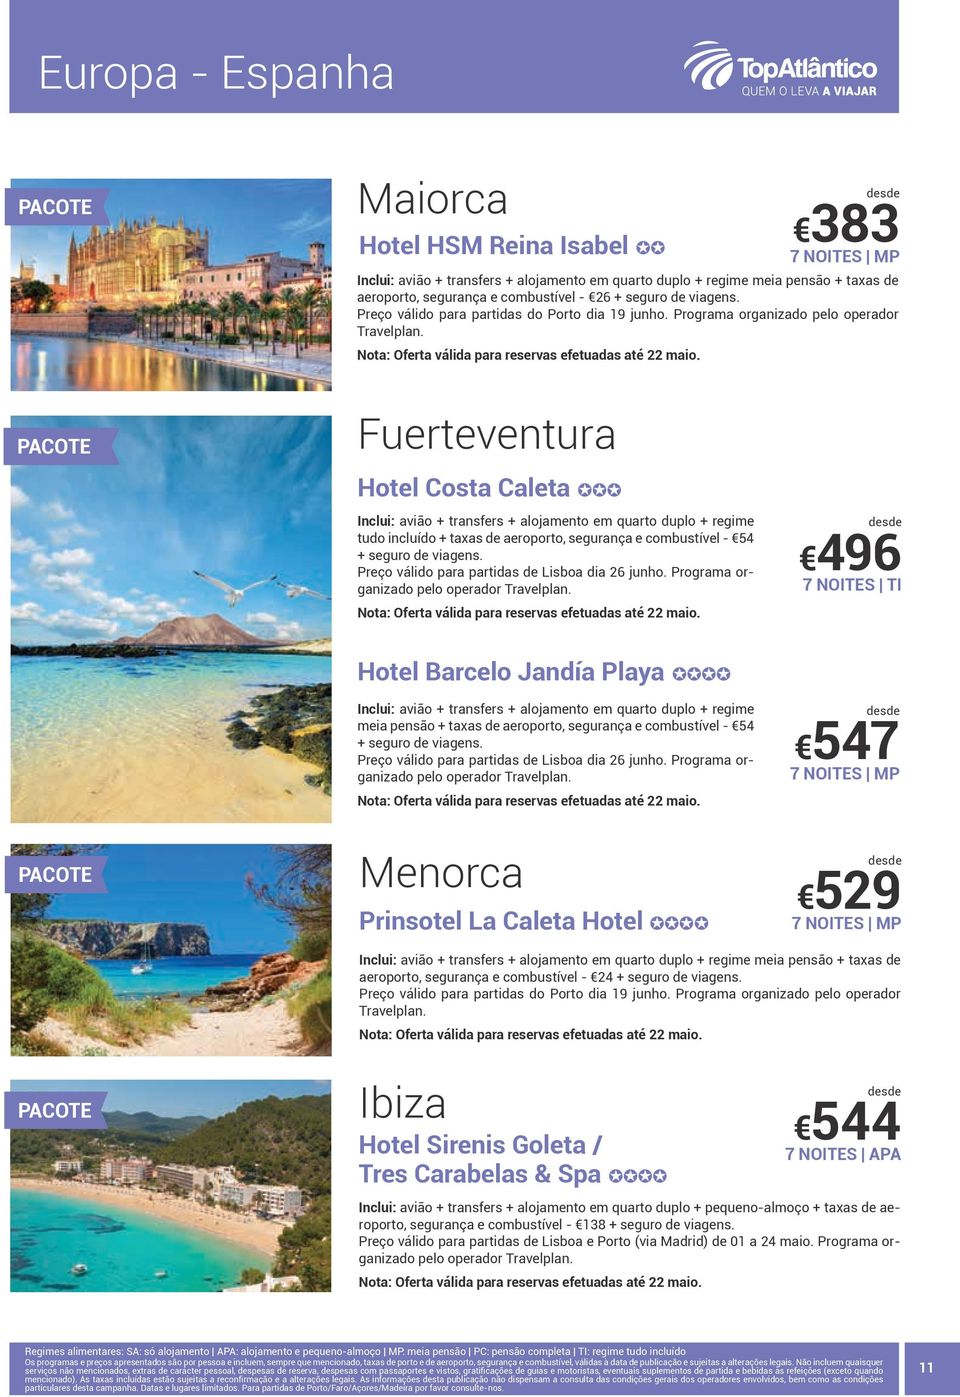 Fuerteventura 383 7 NOITES MP Hotel Costa Caleta JJJ Inclui: avião + transfers + alojamento em quarto duplo + regime tudo incluído + taxas de aeroporto, segurança e combustível - 54 + seguro de